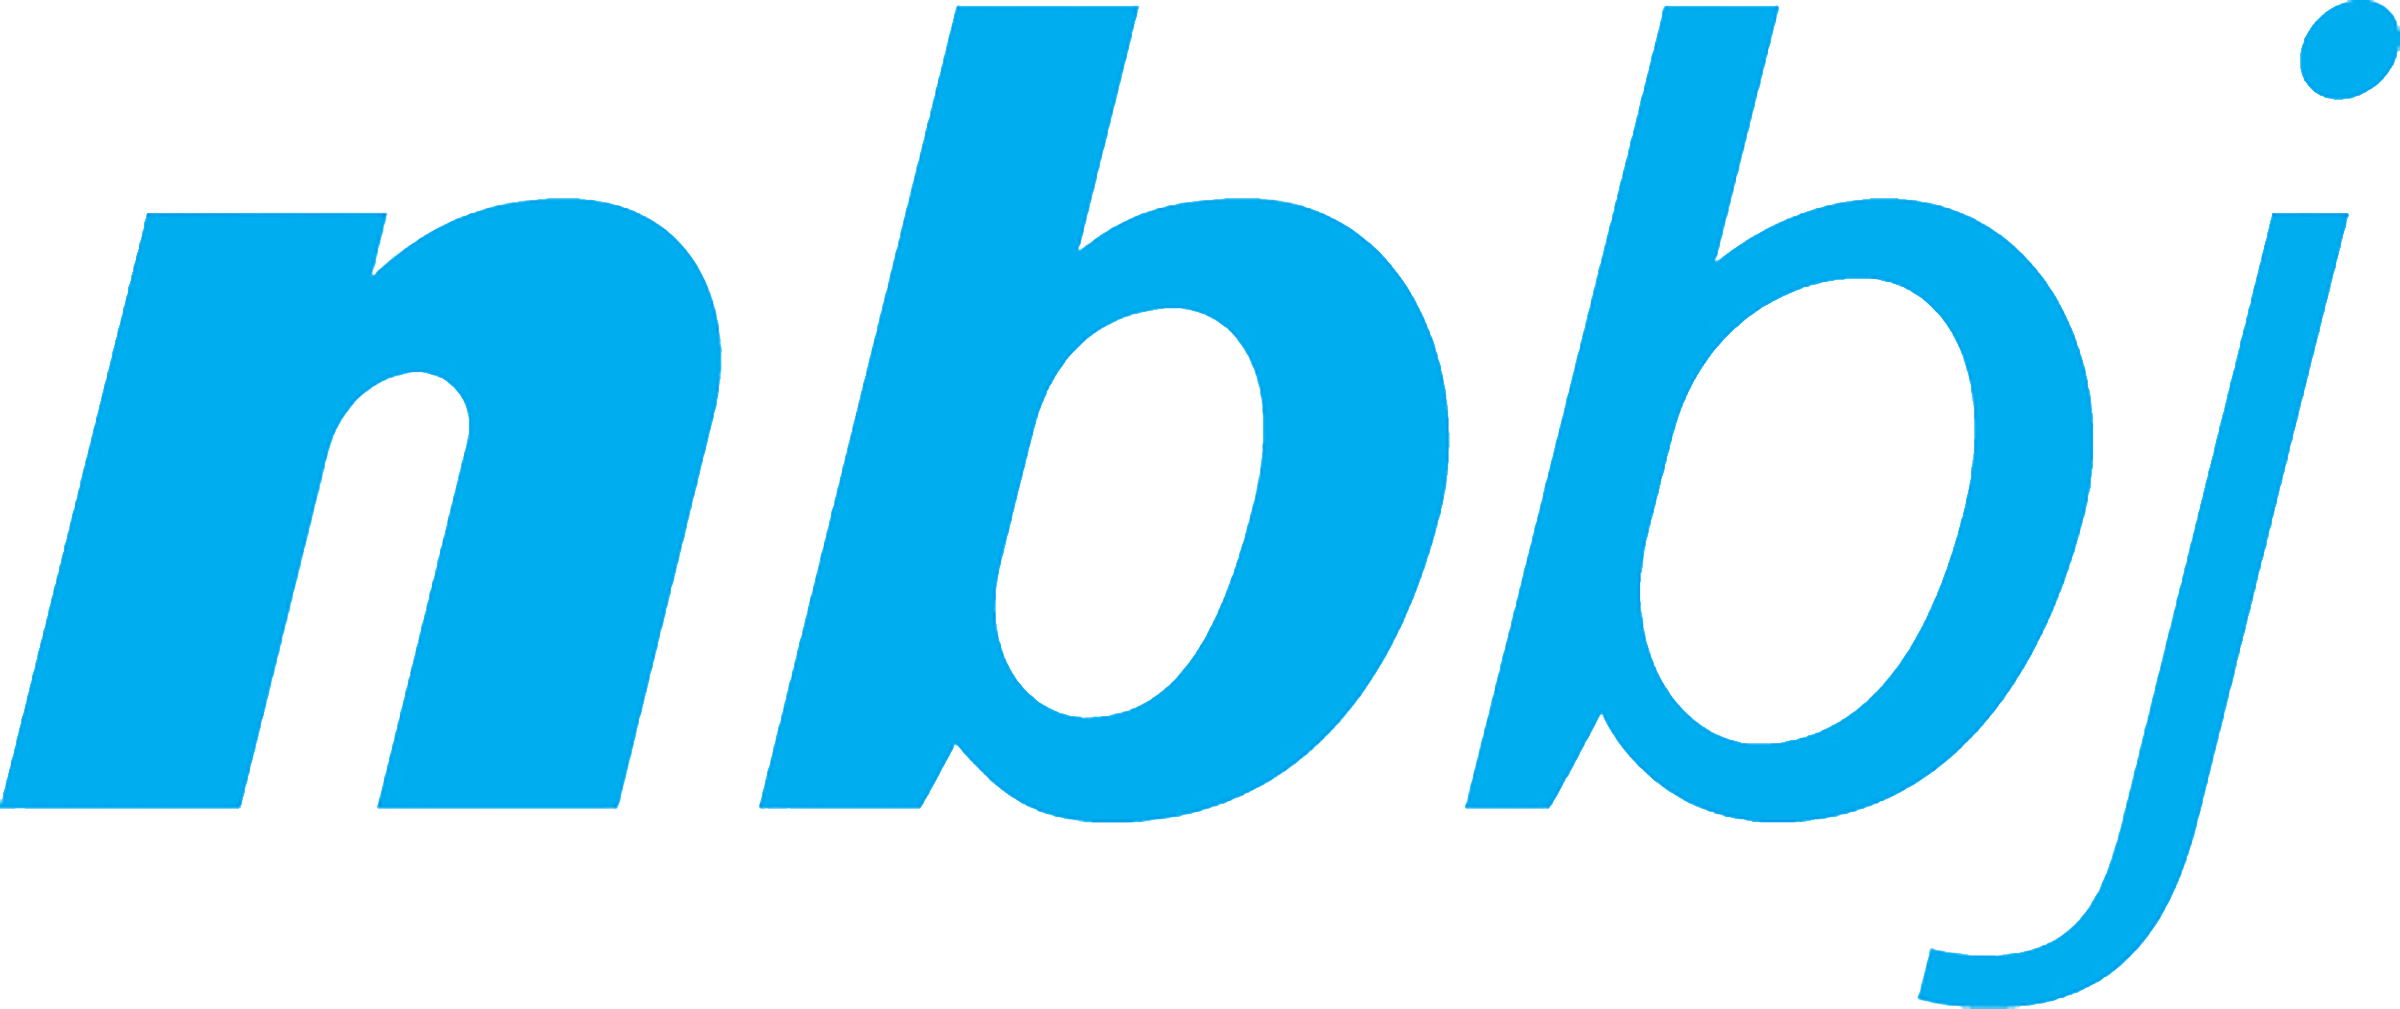 NBBJ logo.